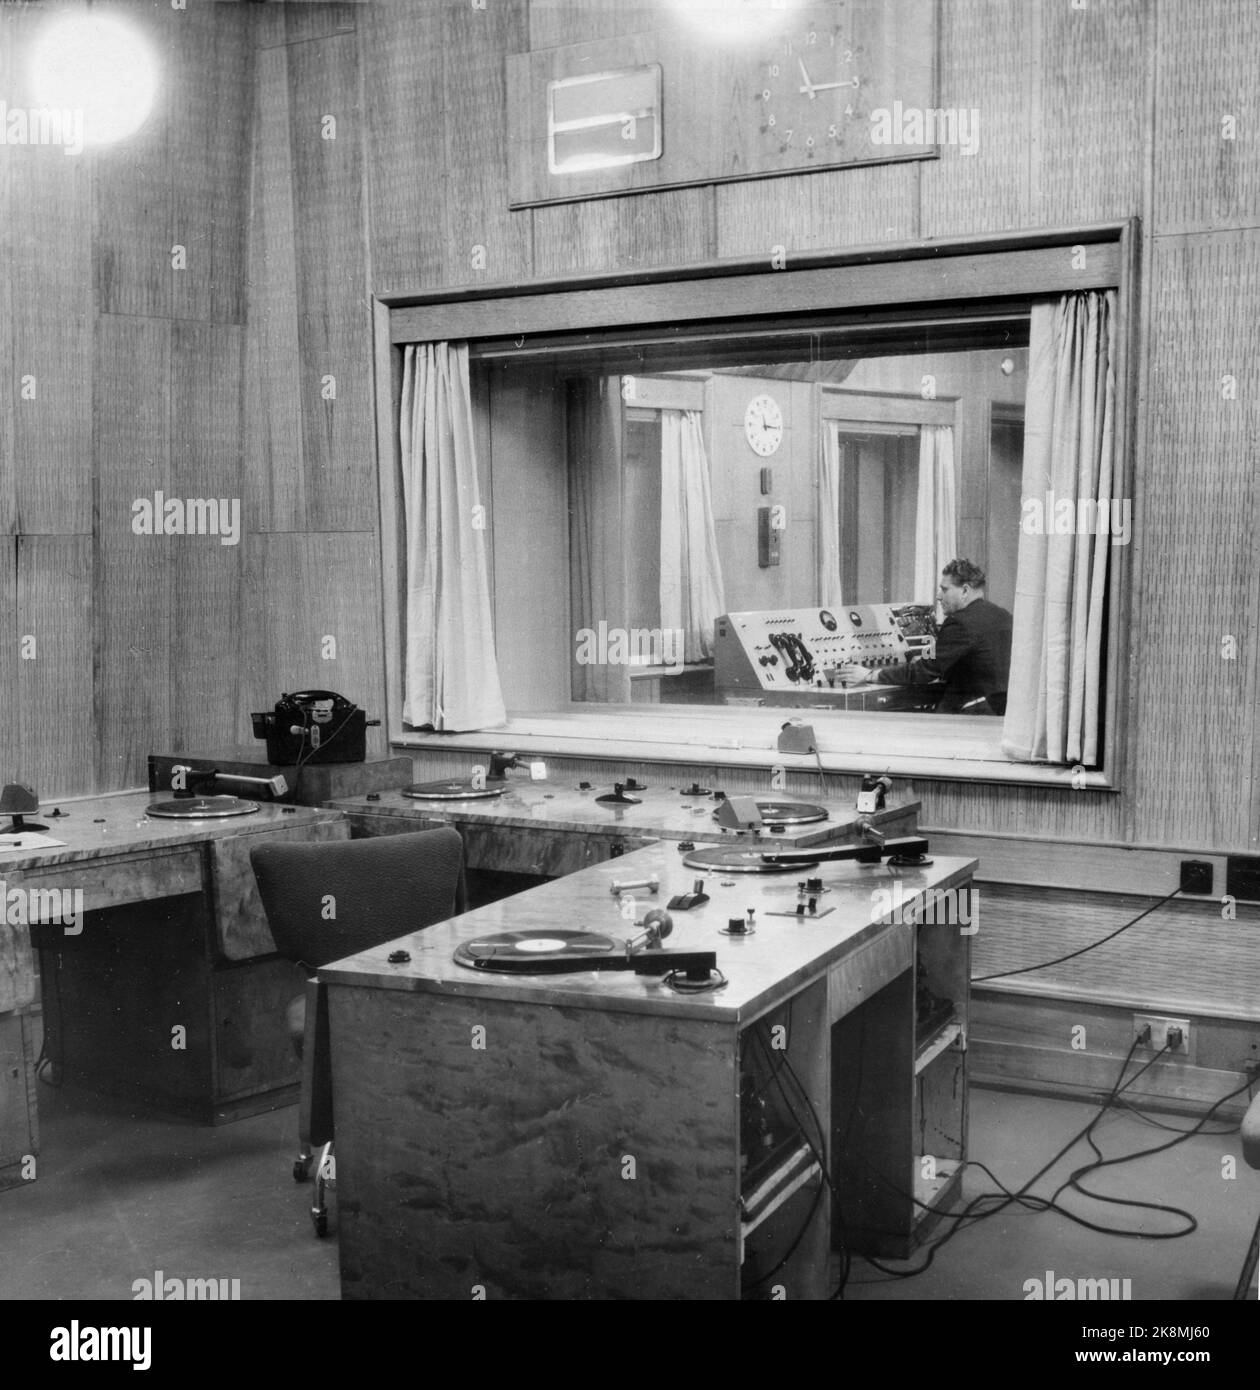 Oslo 194512. La nouvelle maison de radiodiffusion (Norwegian National Broadcasting) de Marienlyst est achevée. De nouveaux locaux et de nouvelles aides techniques fournissent l'aile des programmes. Nous voyons ici la pièce où les effets sonores sont inclus. À l'intérieur, nous regardons la salle de contrôle où le volume et la diffusion sont vérifiés. Banque D'Images